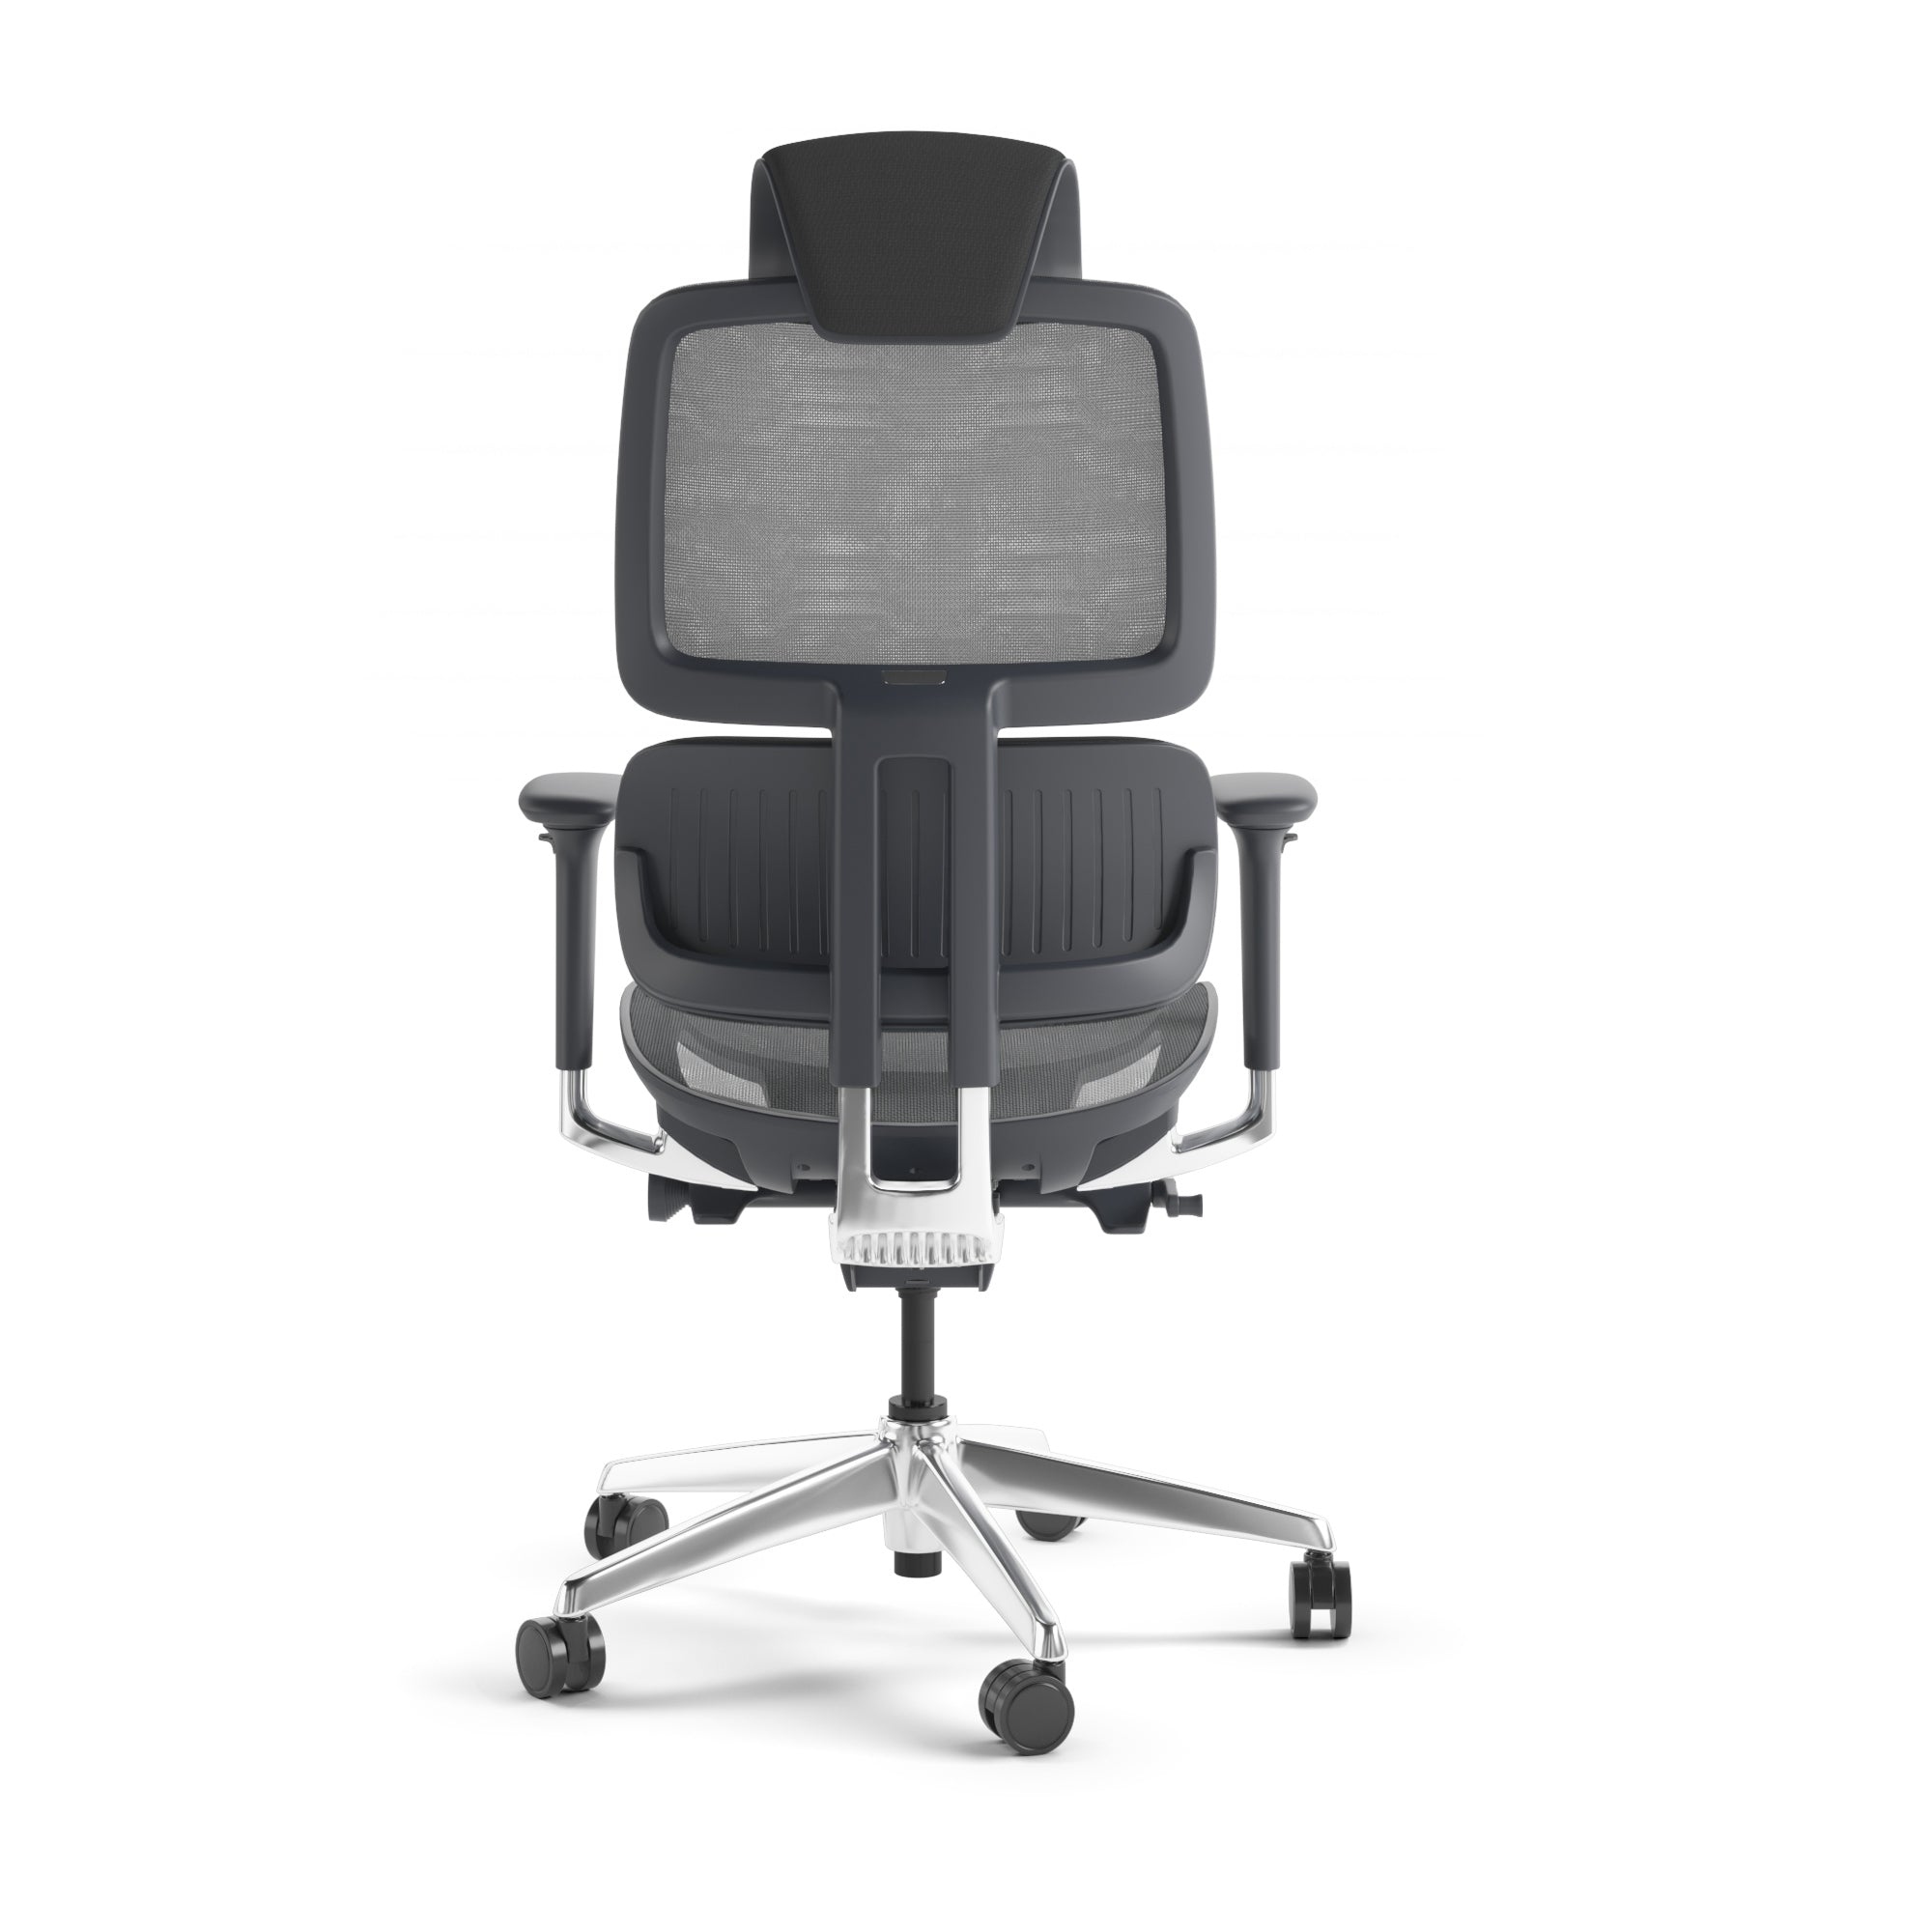 Voca 3501 Office Chair